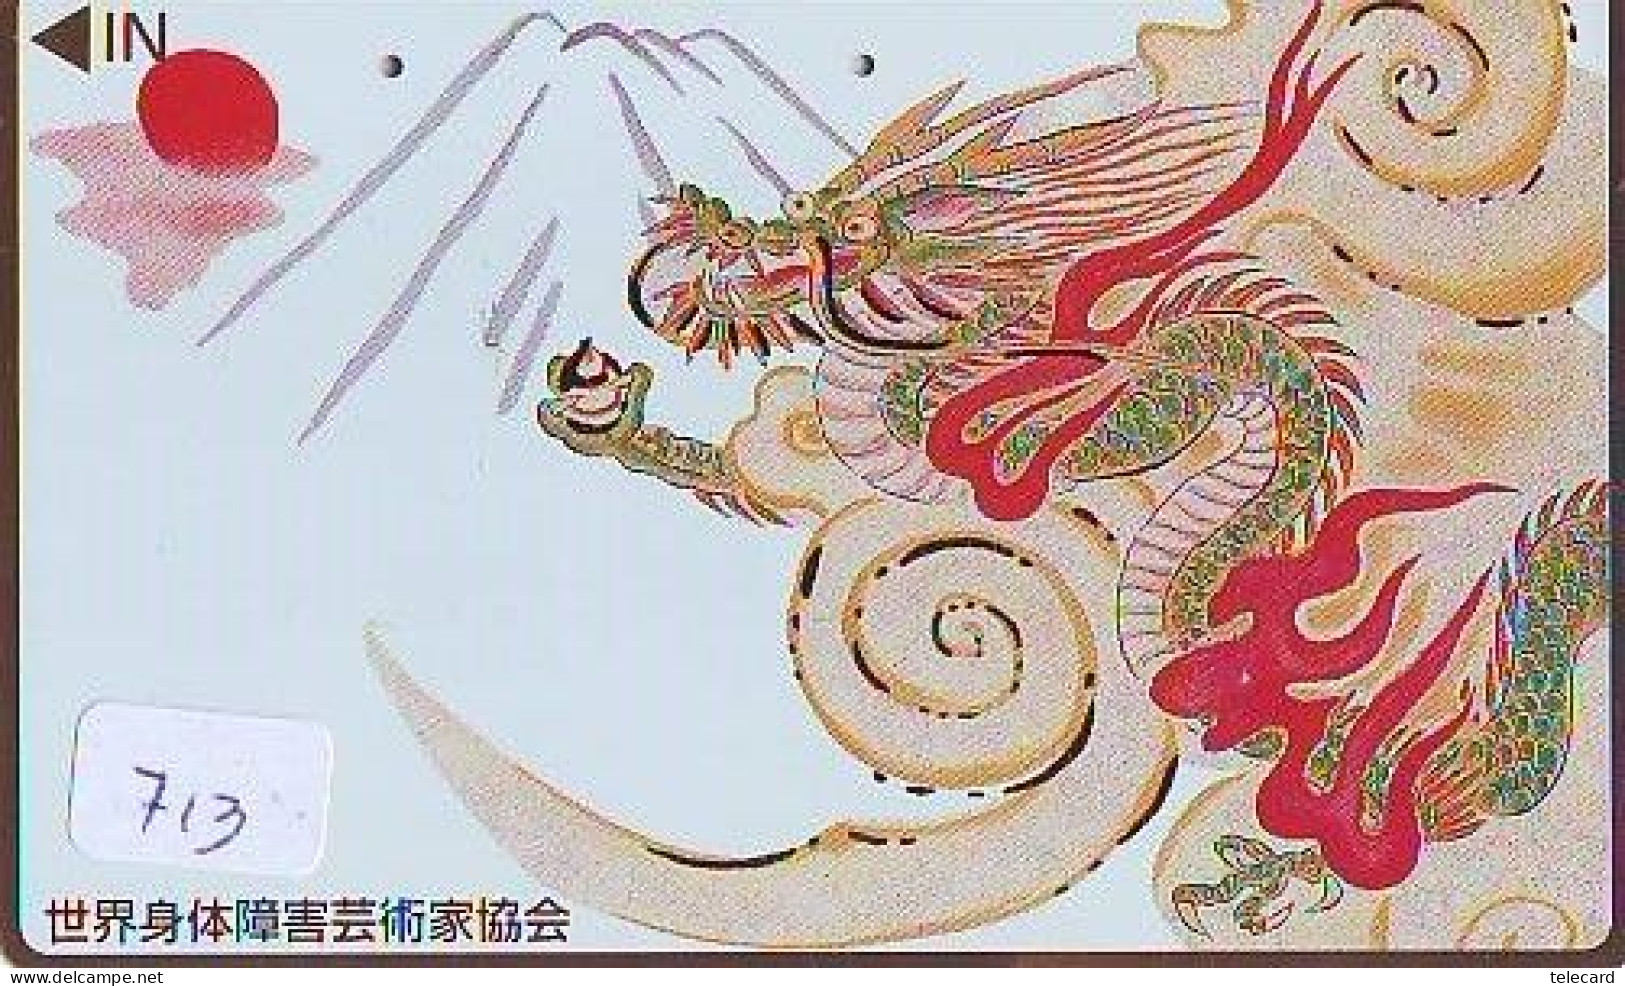 Télécarte Japon * DRAGON L'ESTRAGON DRACHE DRAGÓN DRAGO (713) Zodiaque - Zodiac Horoscope * Phonecard Japan - Zodiaco